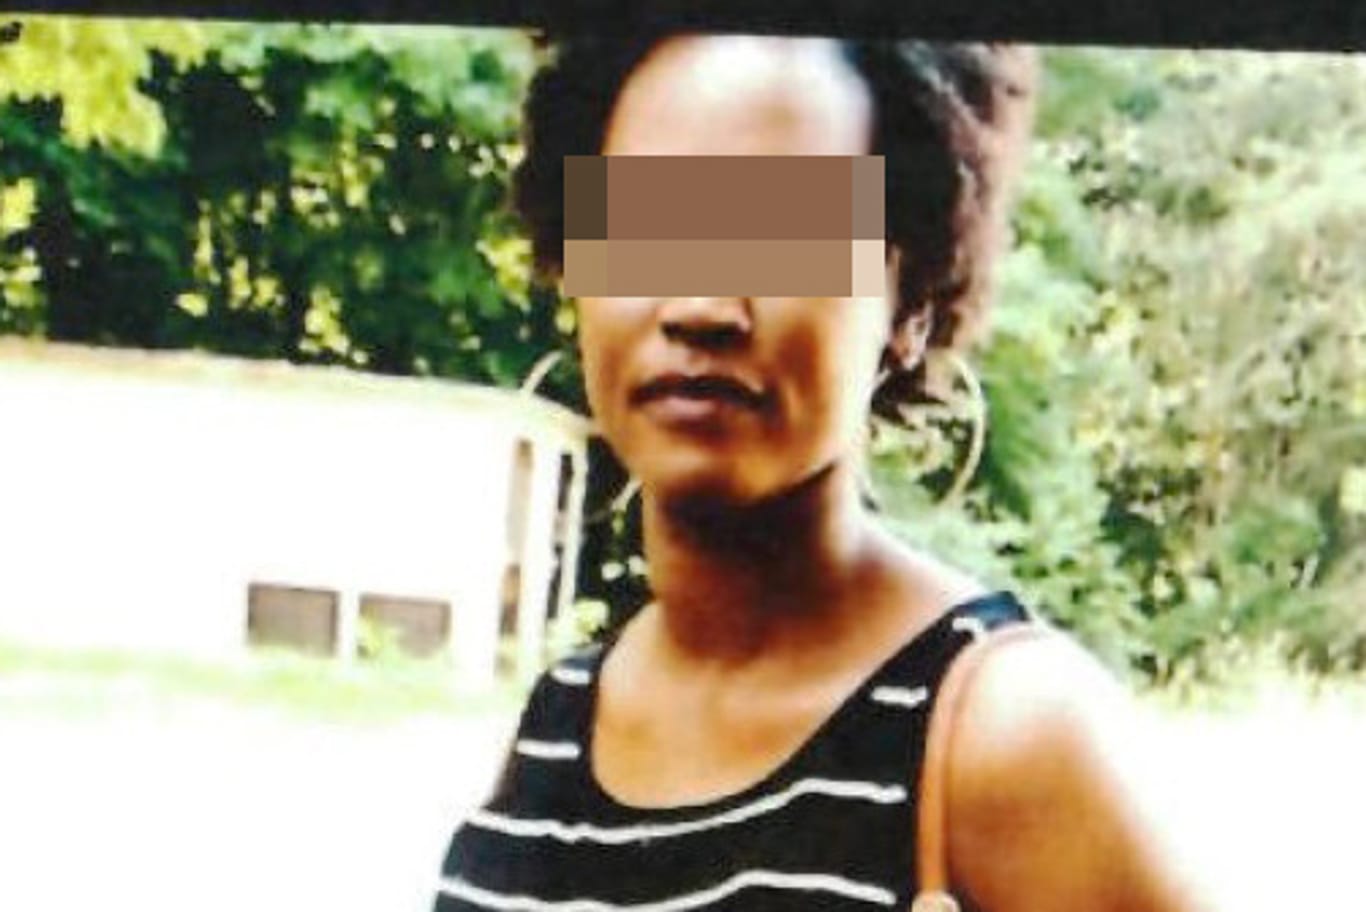 Die getötete 32-Jährige: Ende April veröffentlichte die Polizei eine Vermisstenanzeige mit diesem Bild von der Frau.